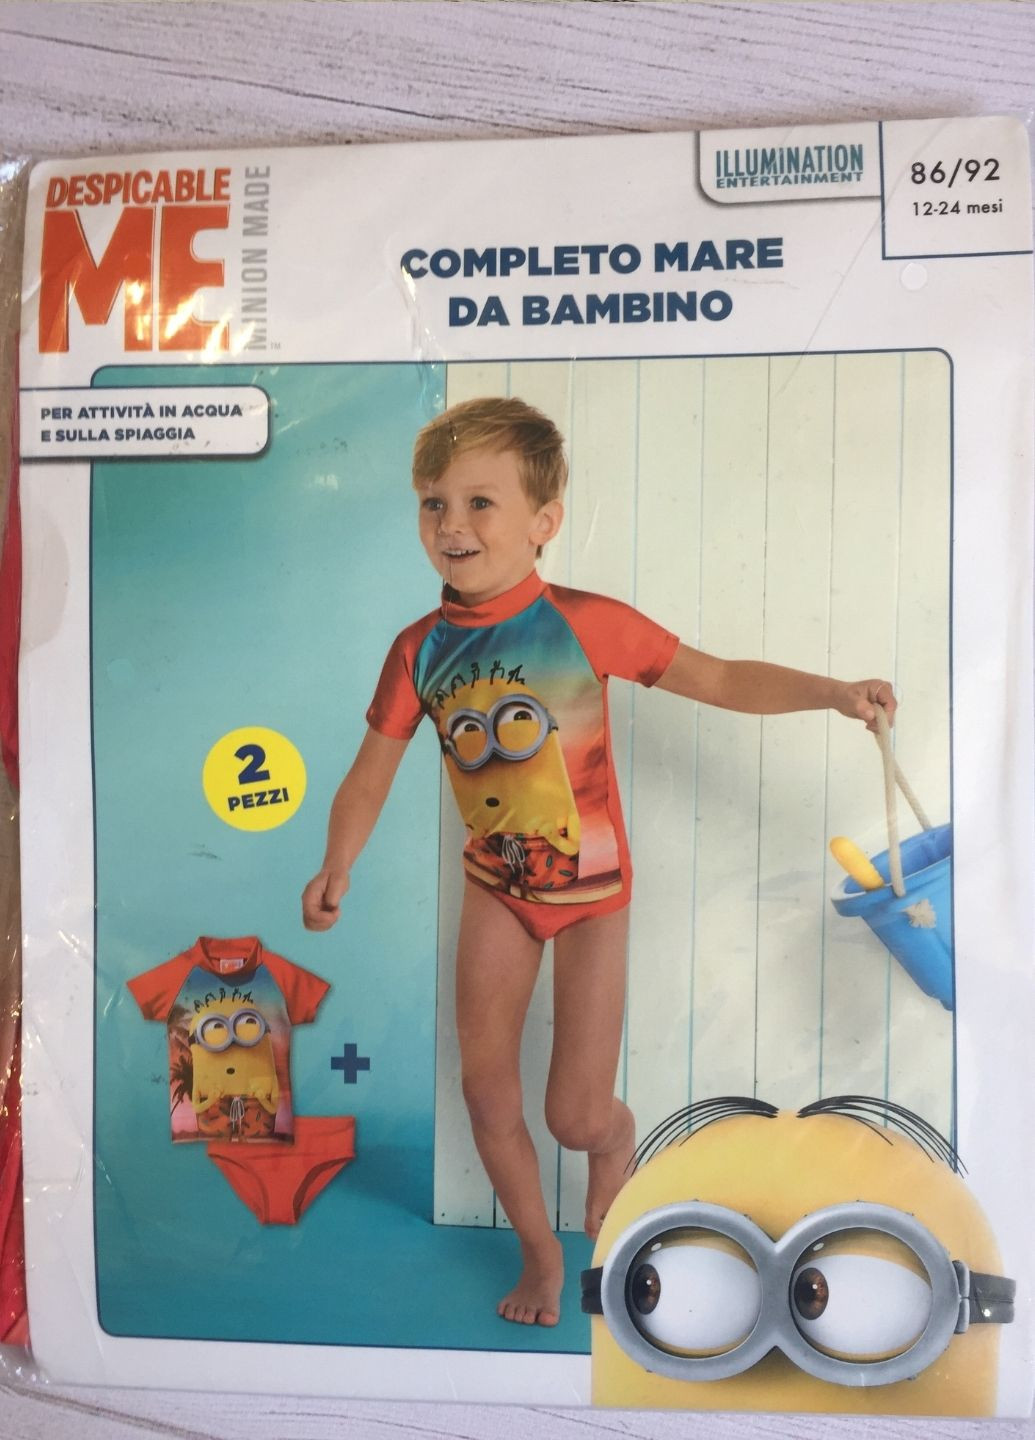 Пляжний костюм хлопчику Disney (253103119)